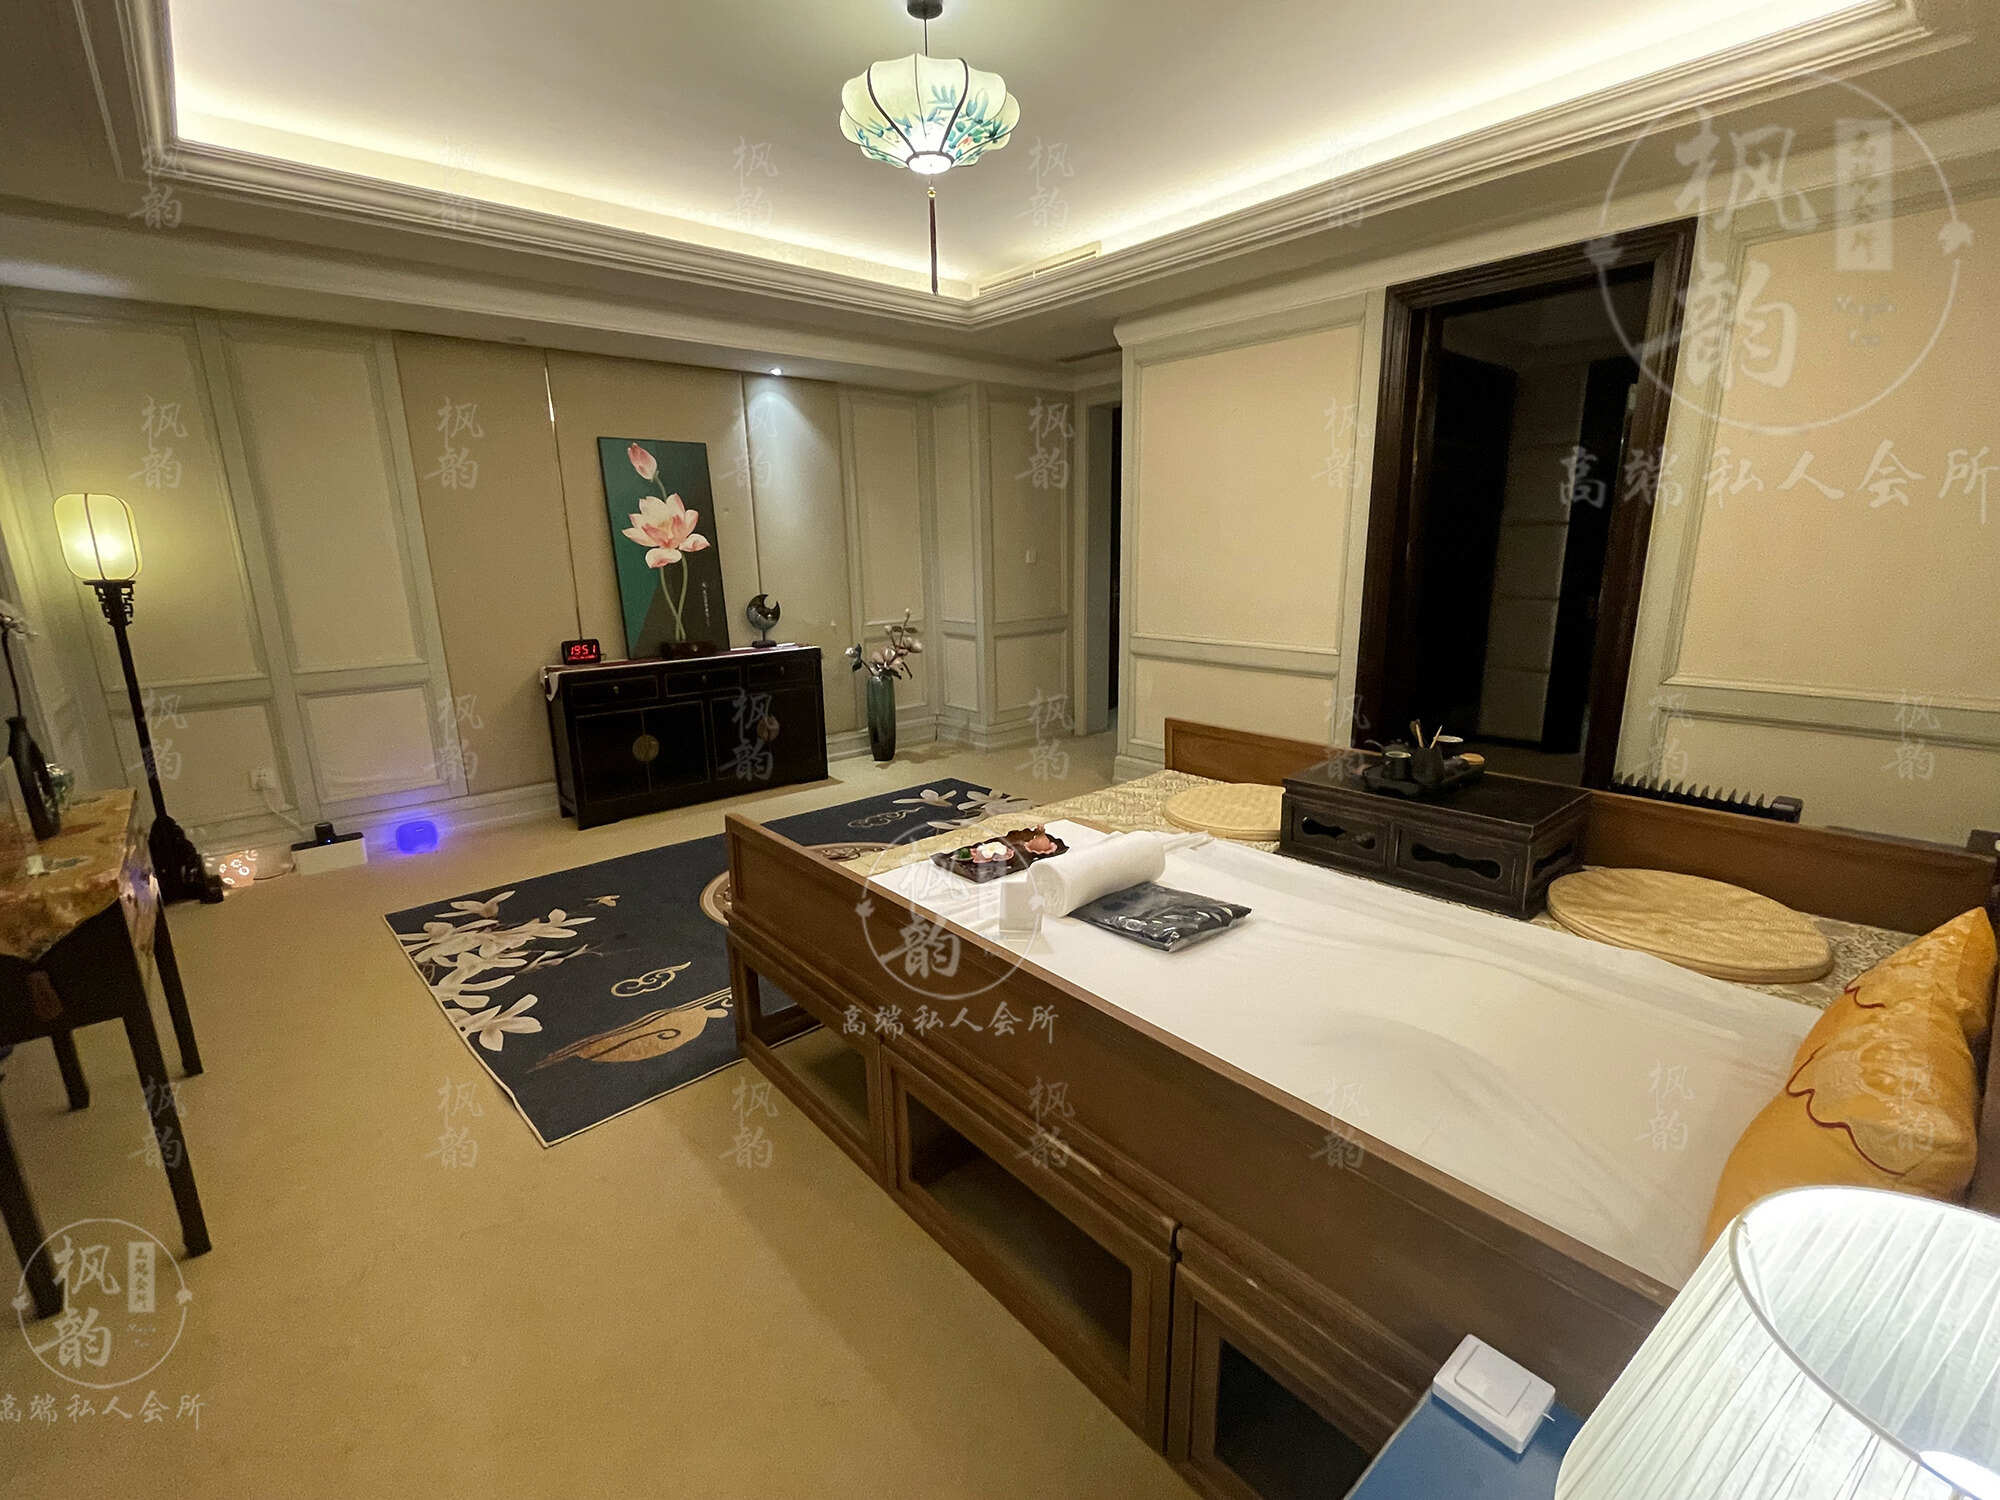 淮南天津渔阳鼓楼人气优选沐足会馆房间也很干净，舒适的spa体验